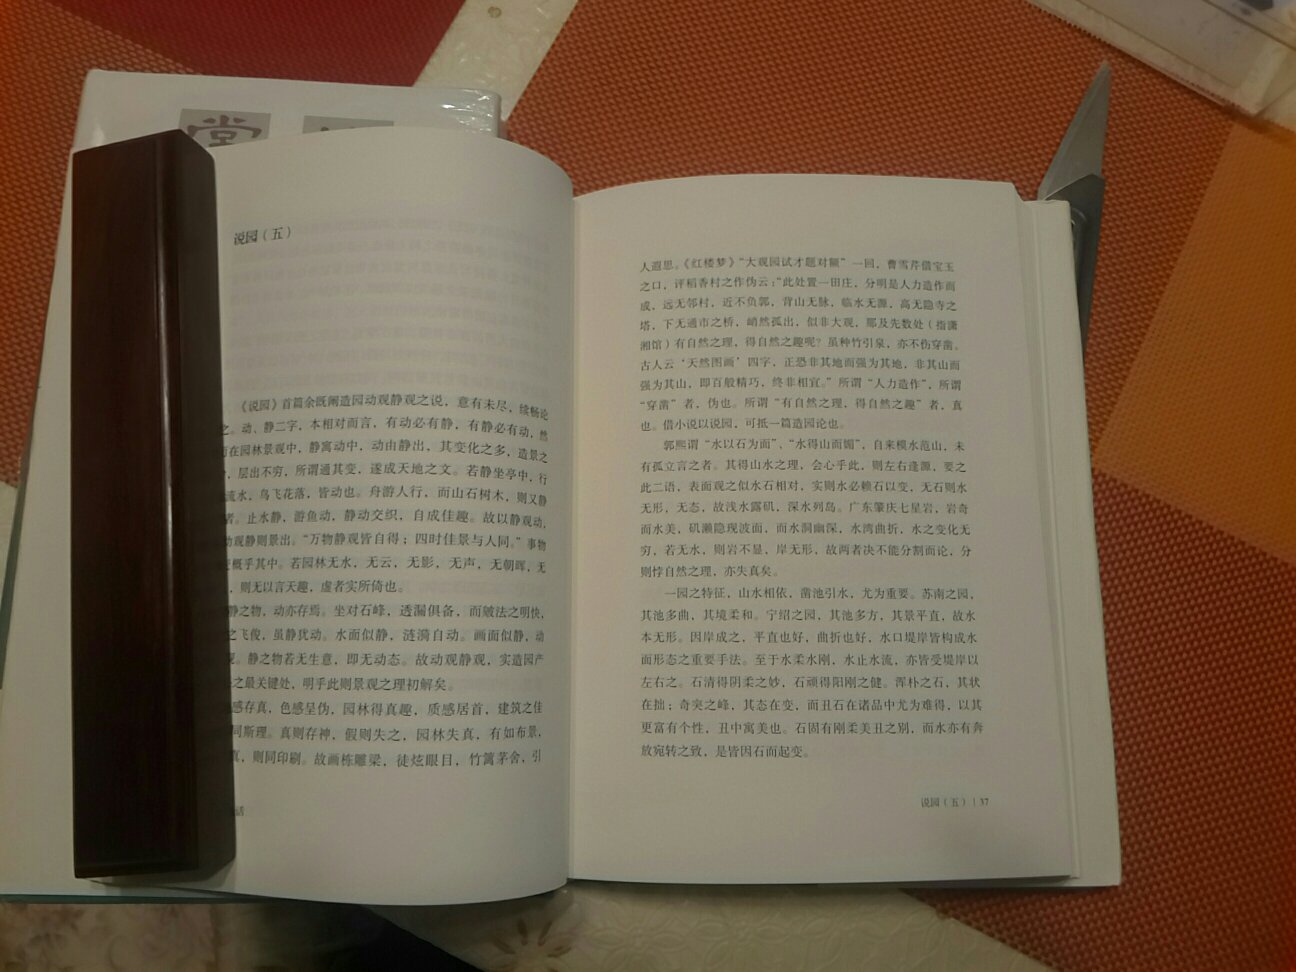 本书是陈从周先生的，关于园林的论文集，是由他的女儿编写的